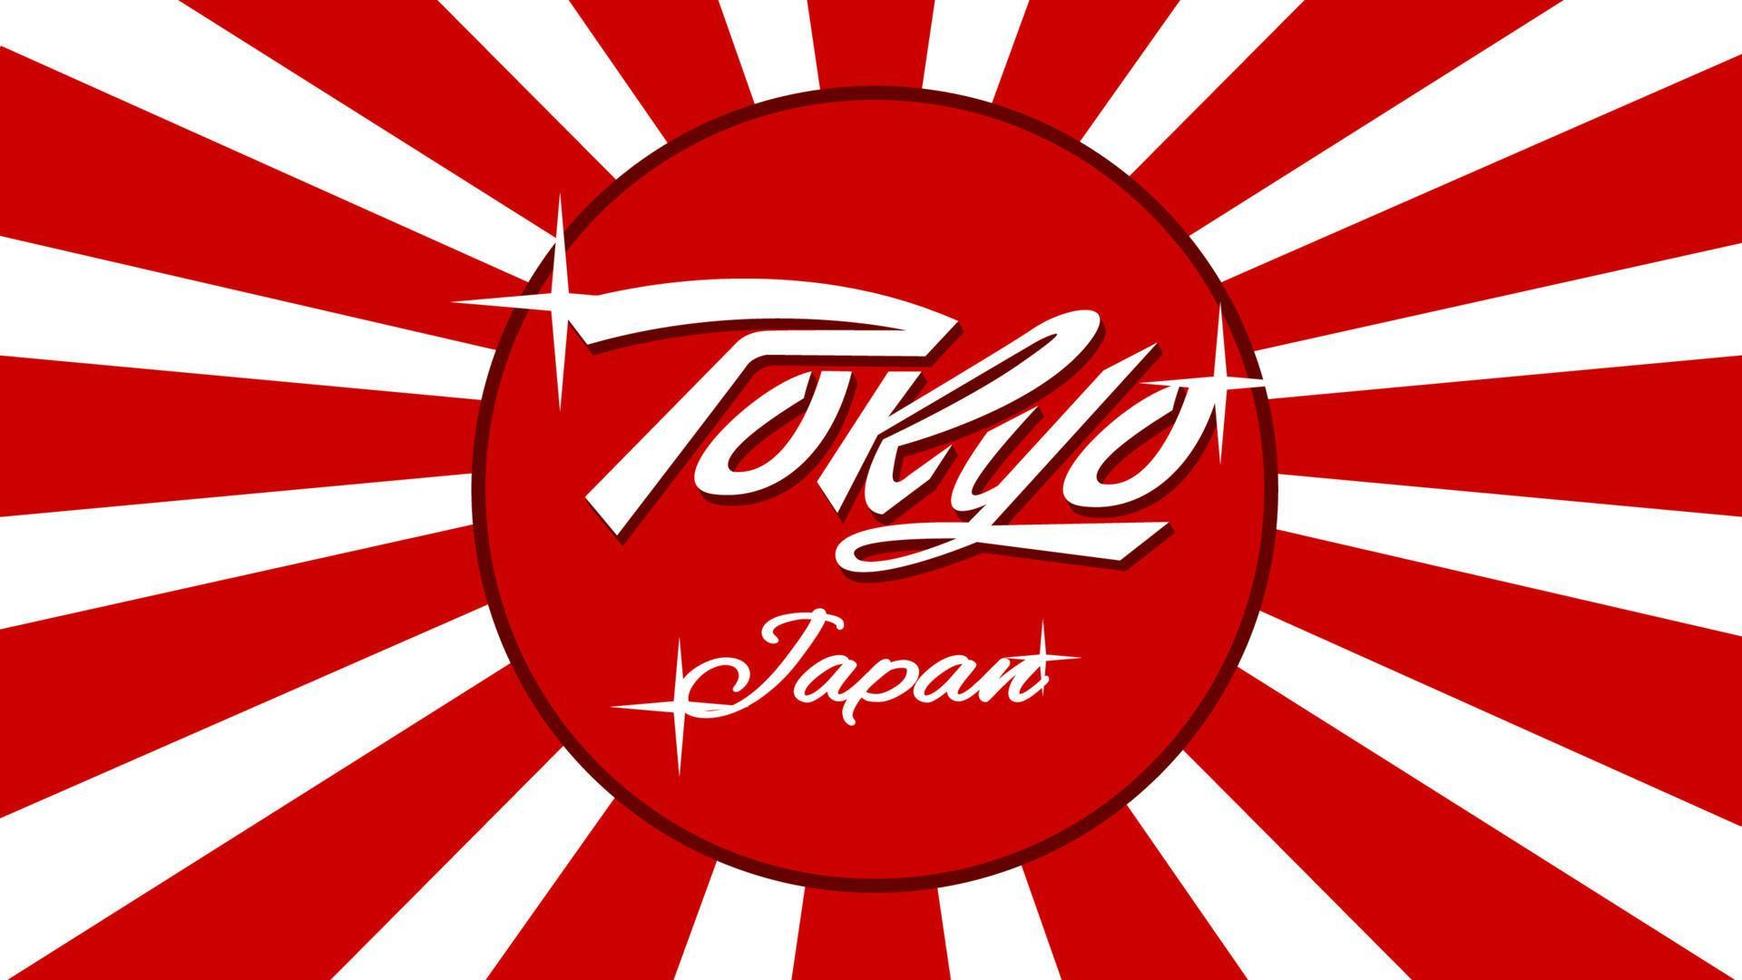 Tokyo Japan lettering flag background vector